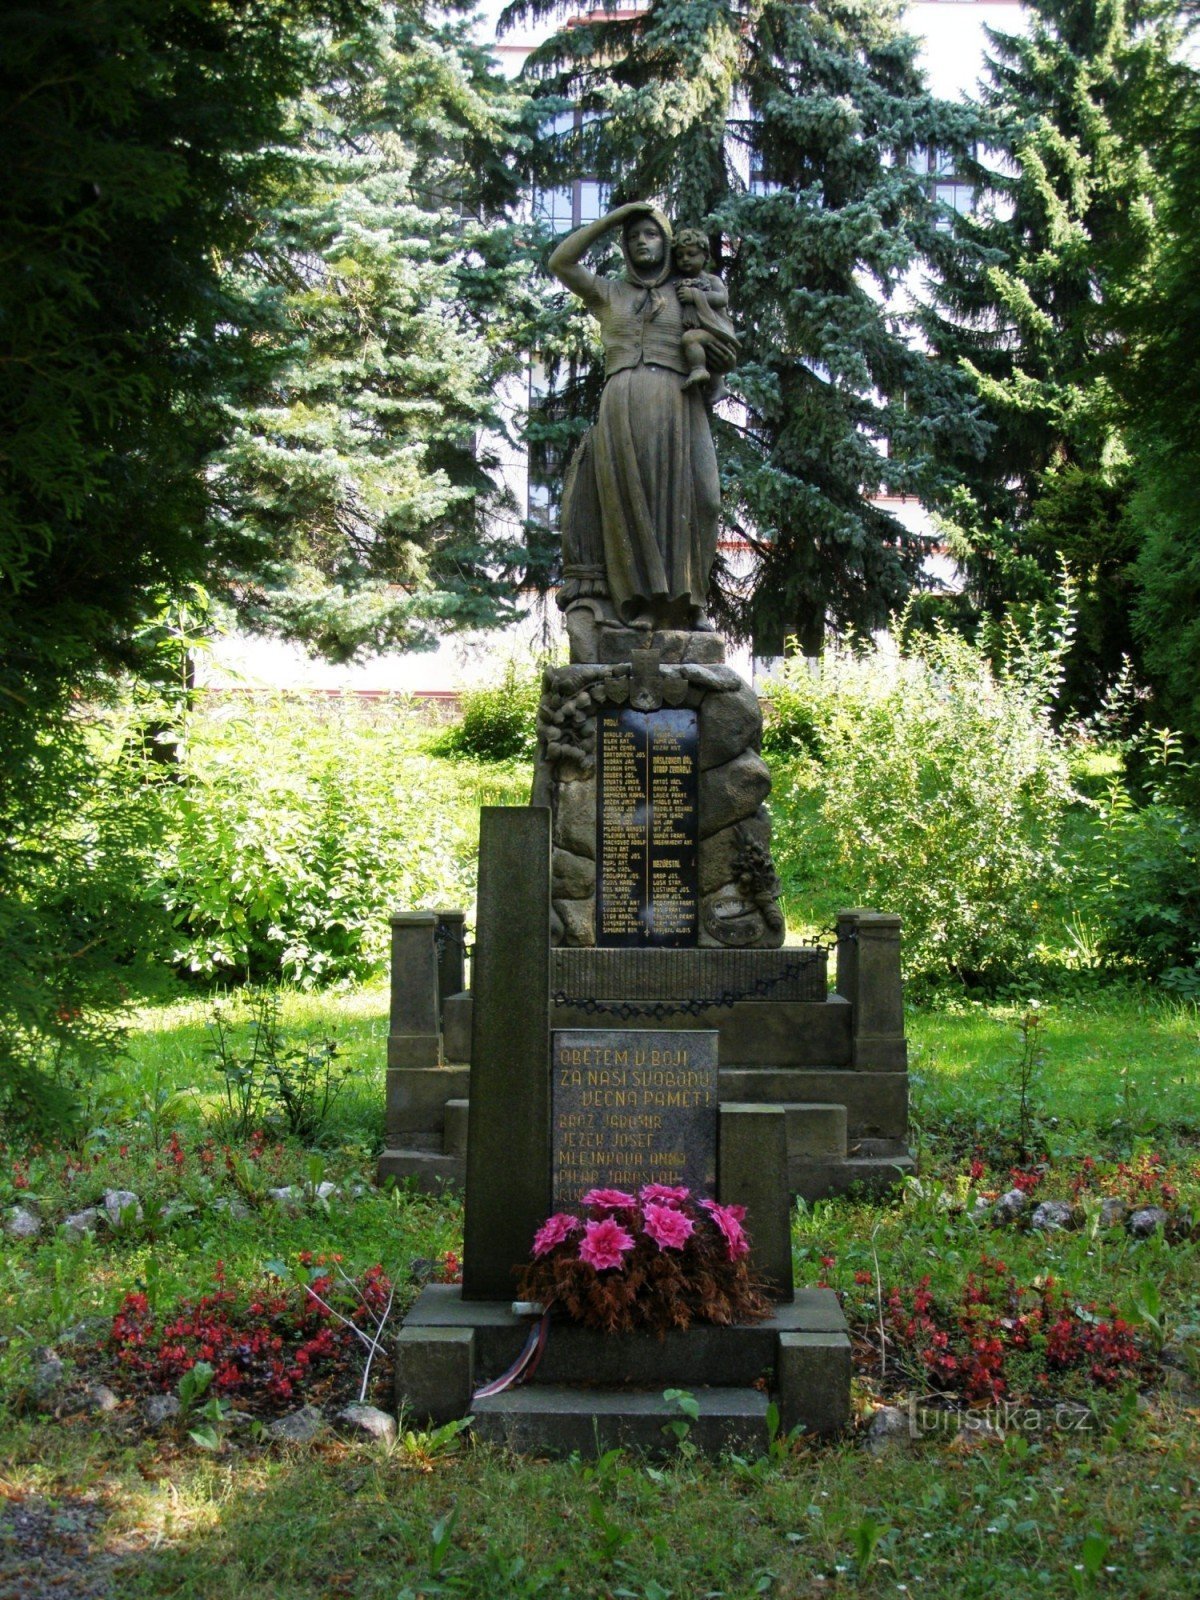 Stará Paka - monument till offer för krig